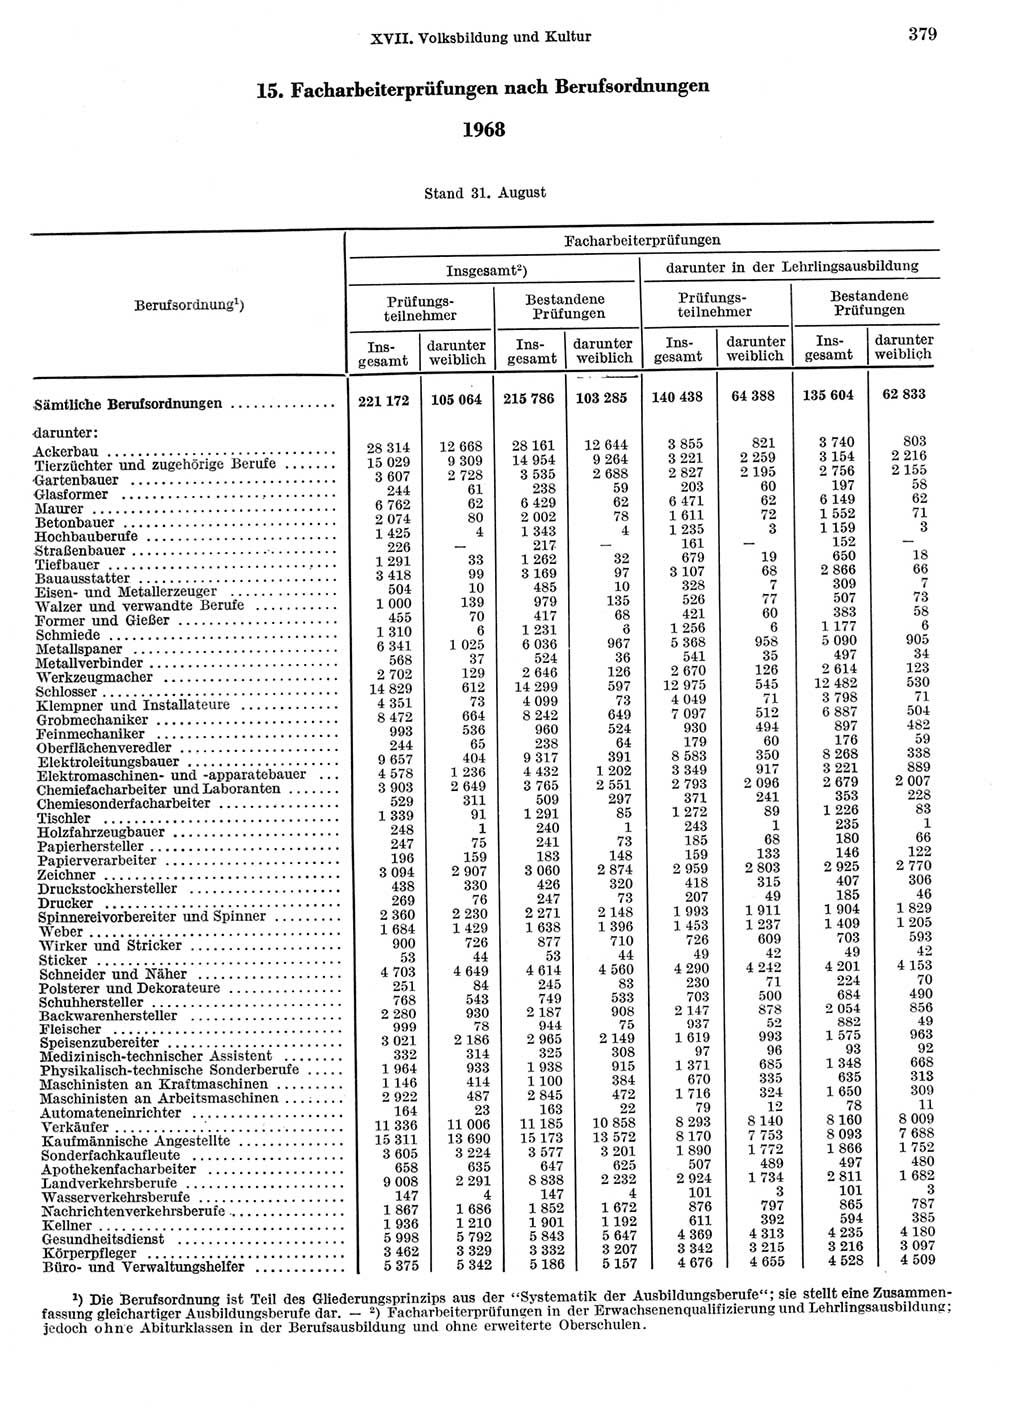 Statistisches Jahrbuch der Deutschen Demokratischen Republik (DDR) 1969, Seite 379 (Stat. Jb. DDR 1969, S. 379)